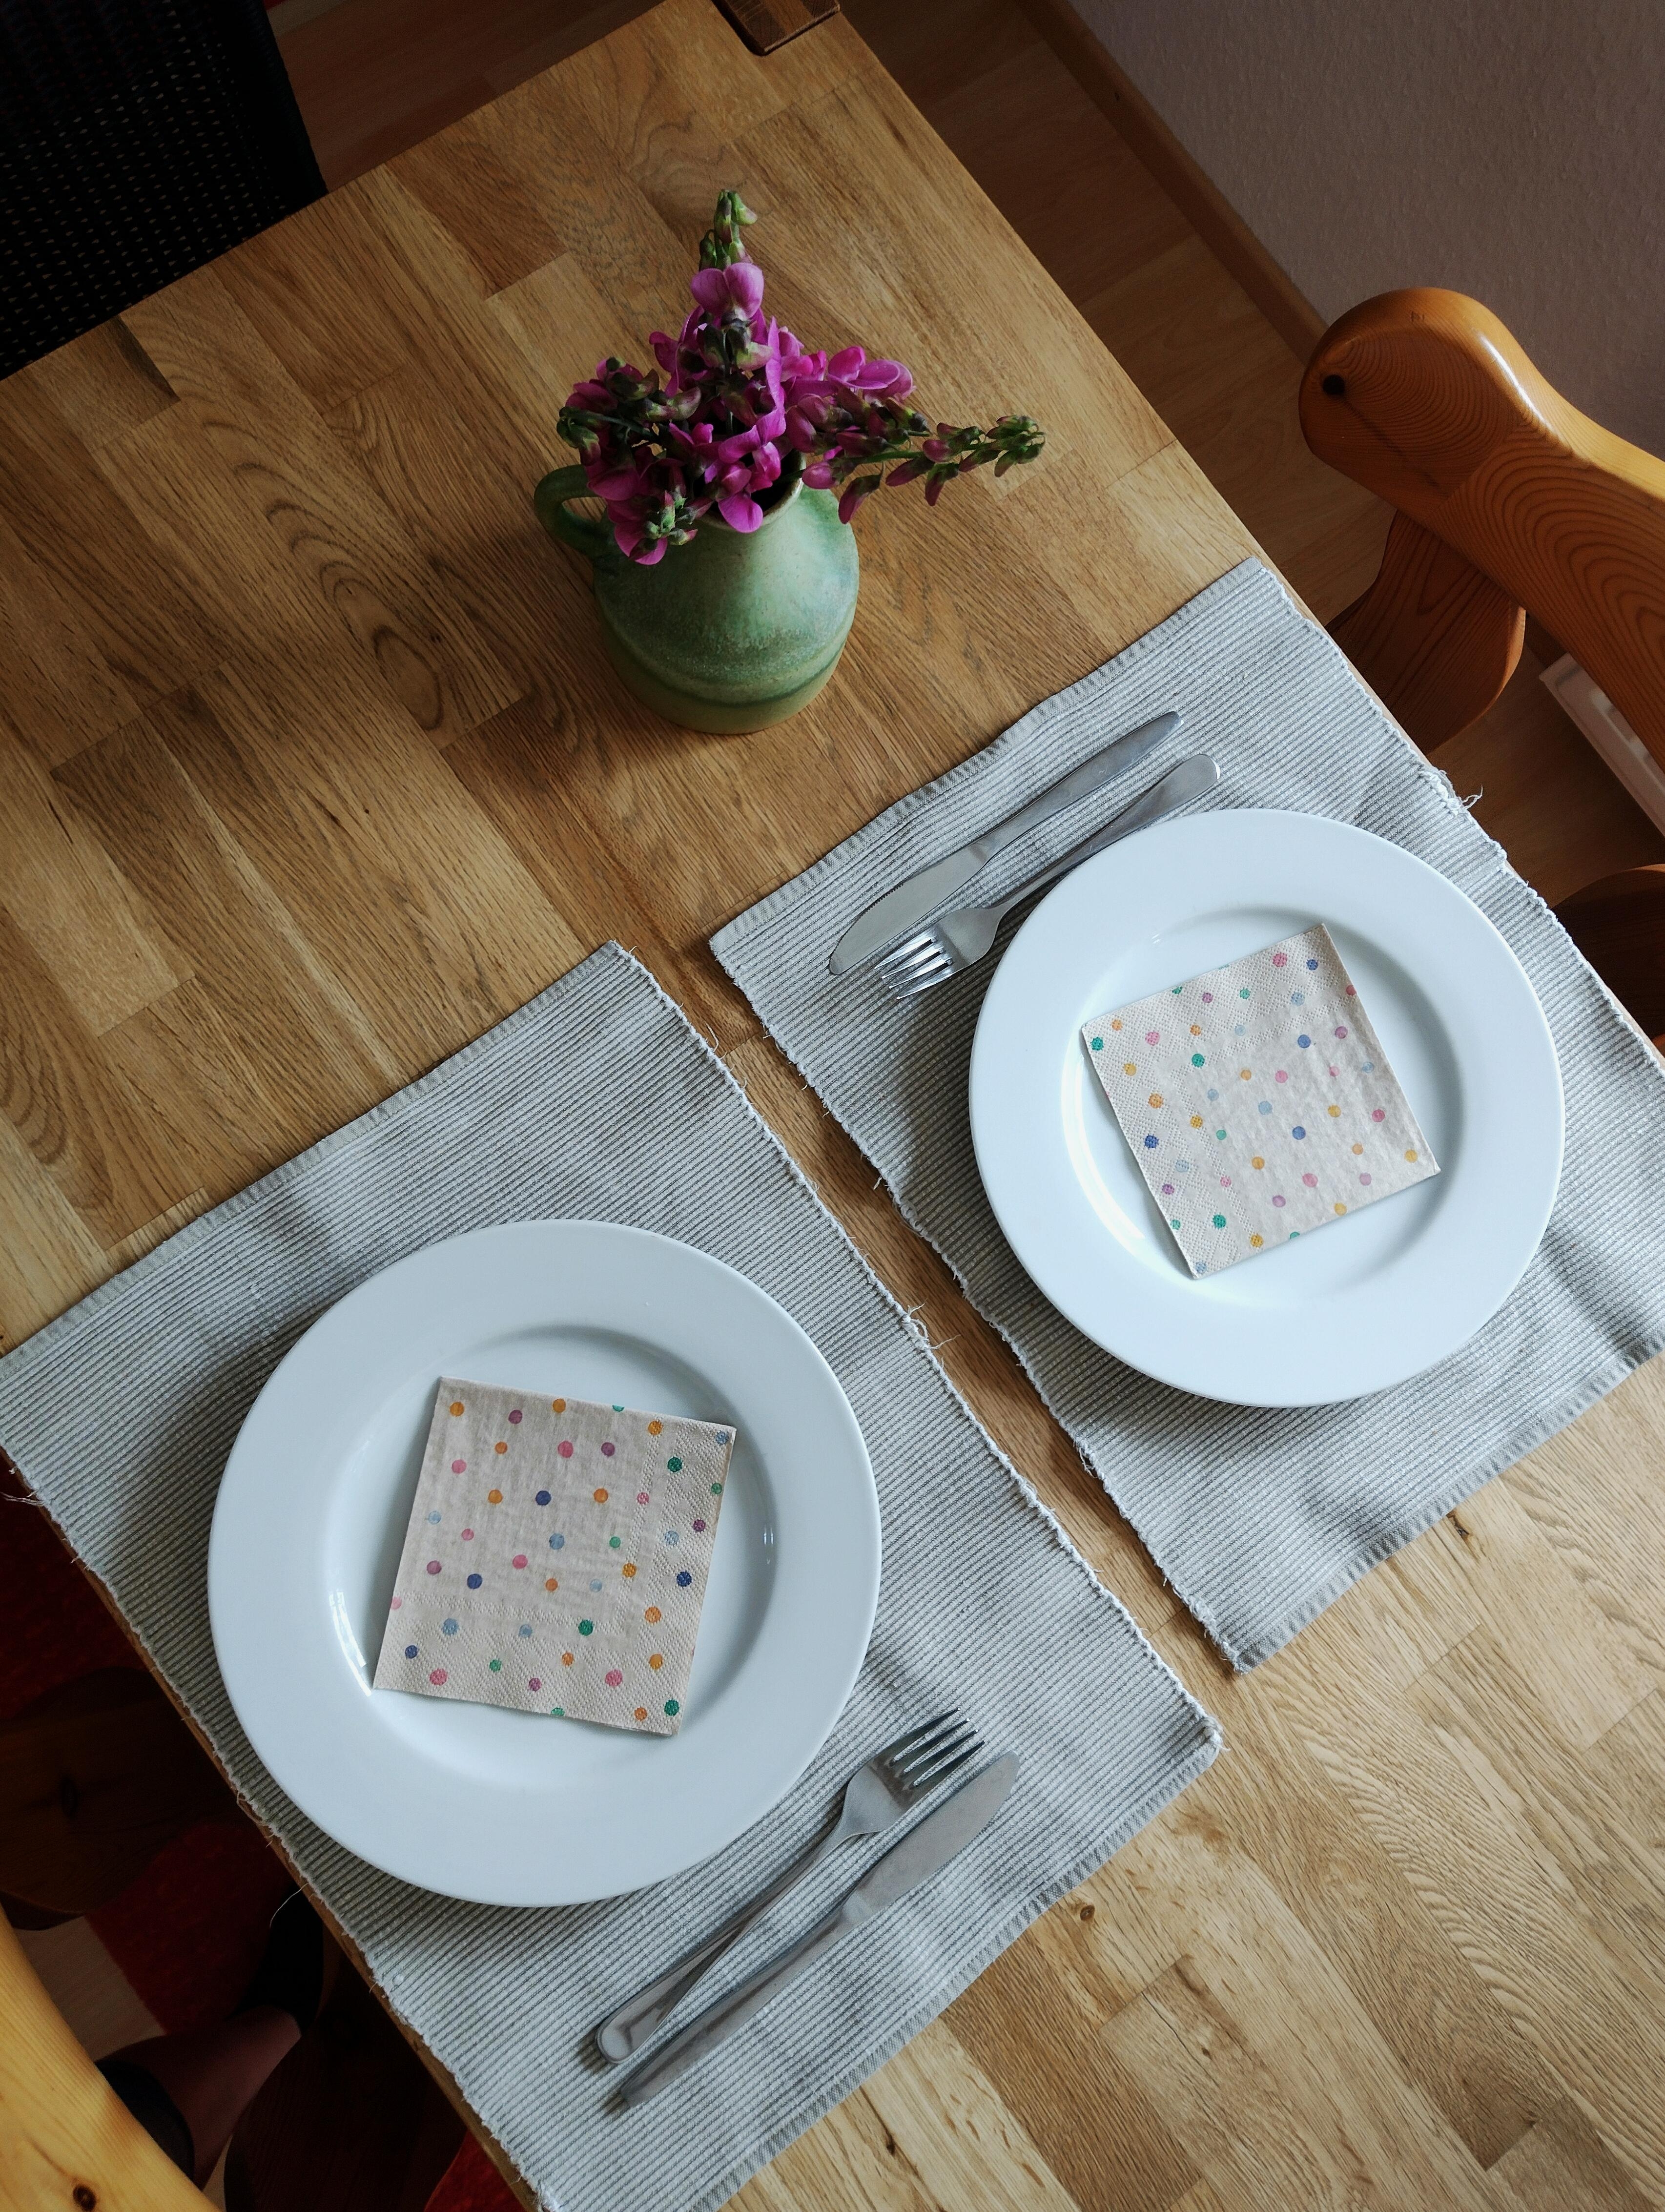 Frisch geölter #Tisch ☺️ und #frischeblumen #esstisch #gedecktertisch #vintagevase #keramikvase
